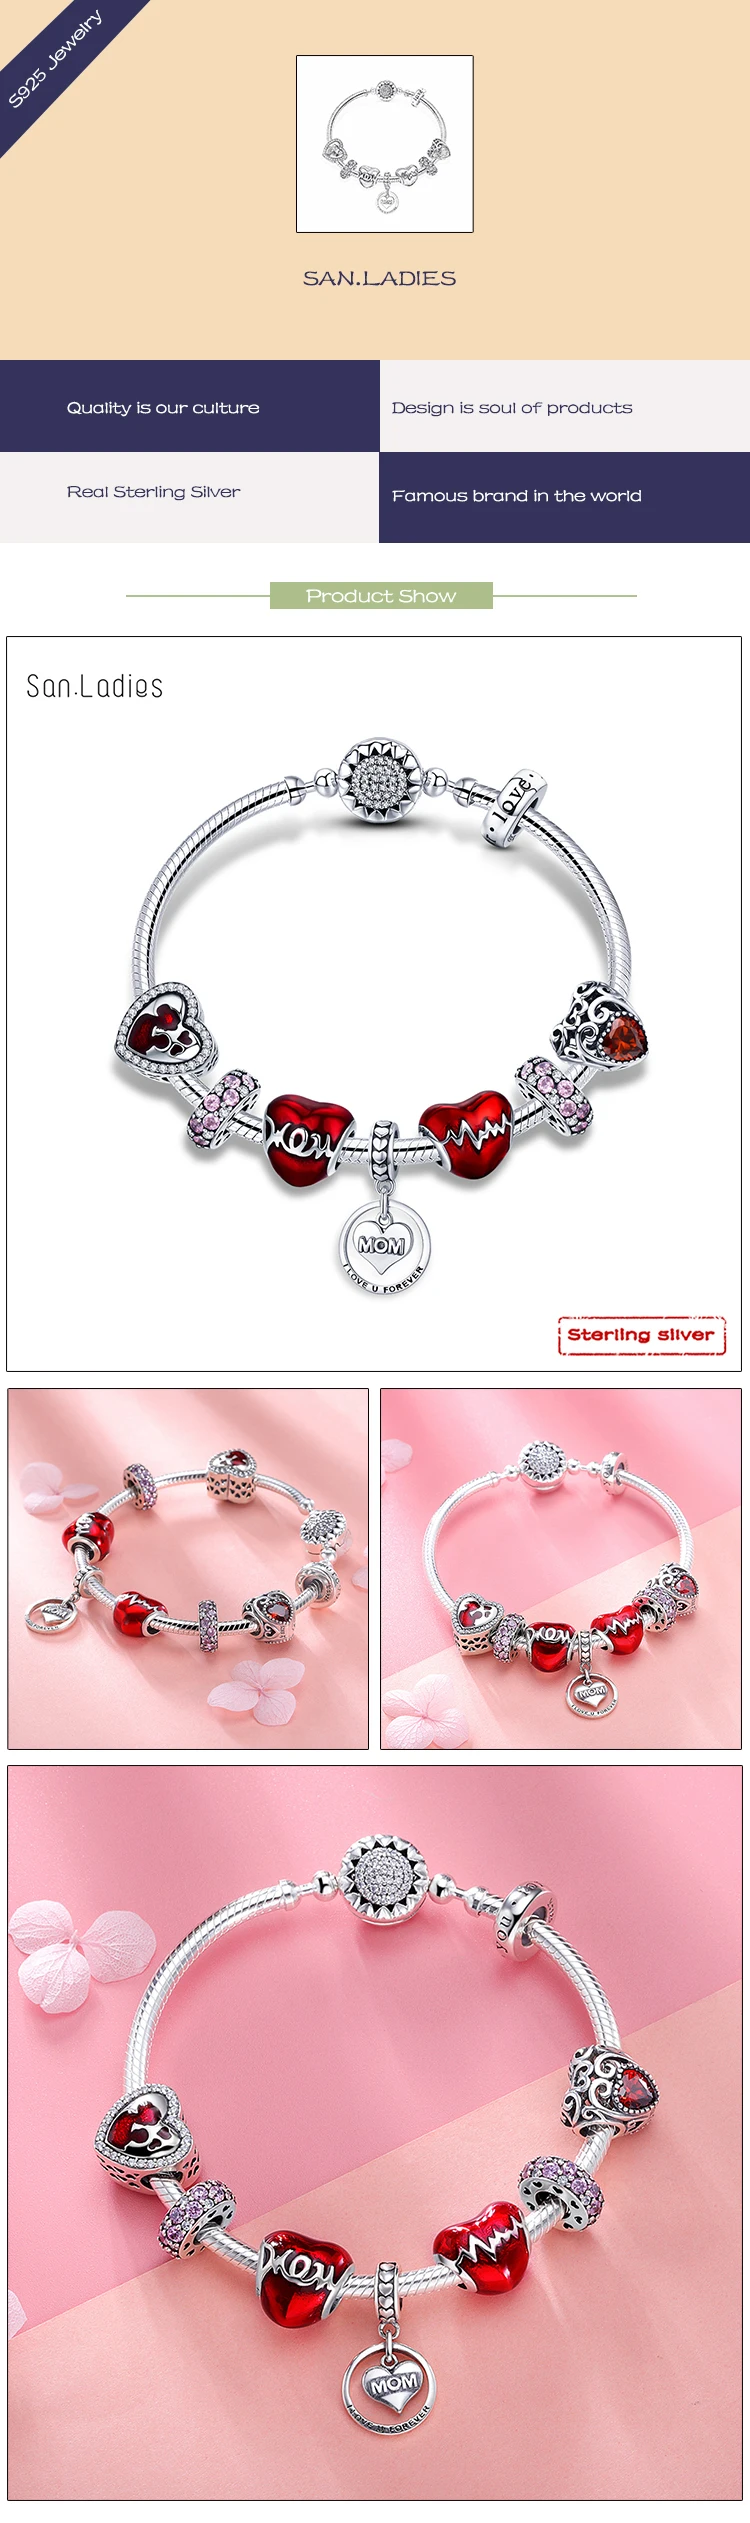 San. Ladies mum heart 925 браслеты с подвесками из серебра 925 пробы браслеты из настоящего серебра Модные женские ювелирные изделия для подарка матери